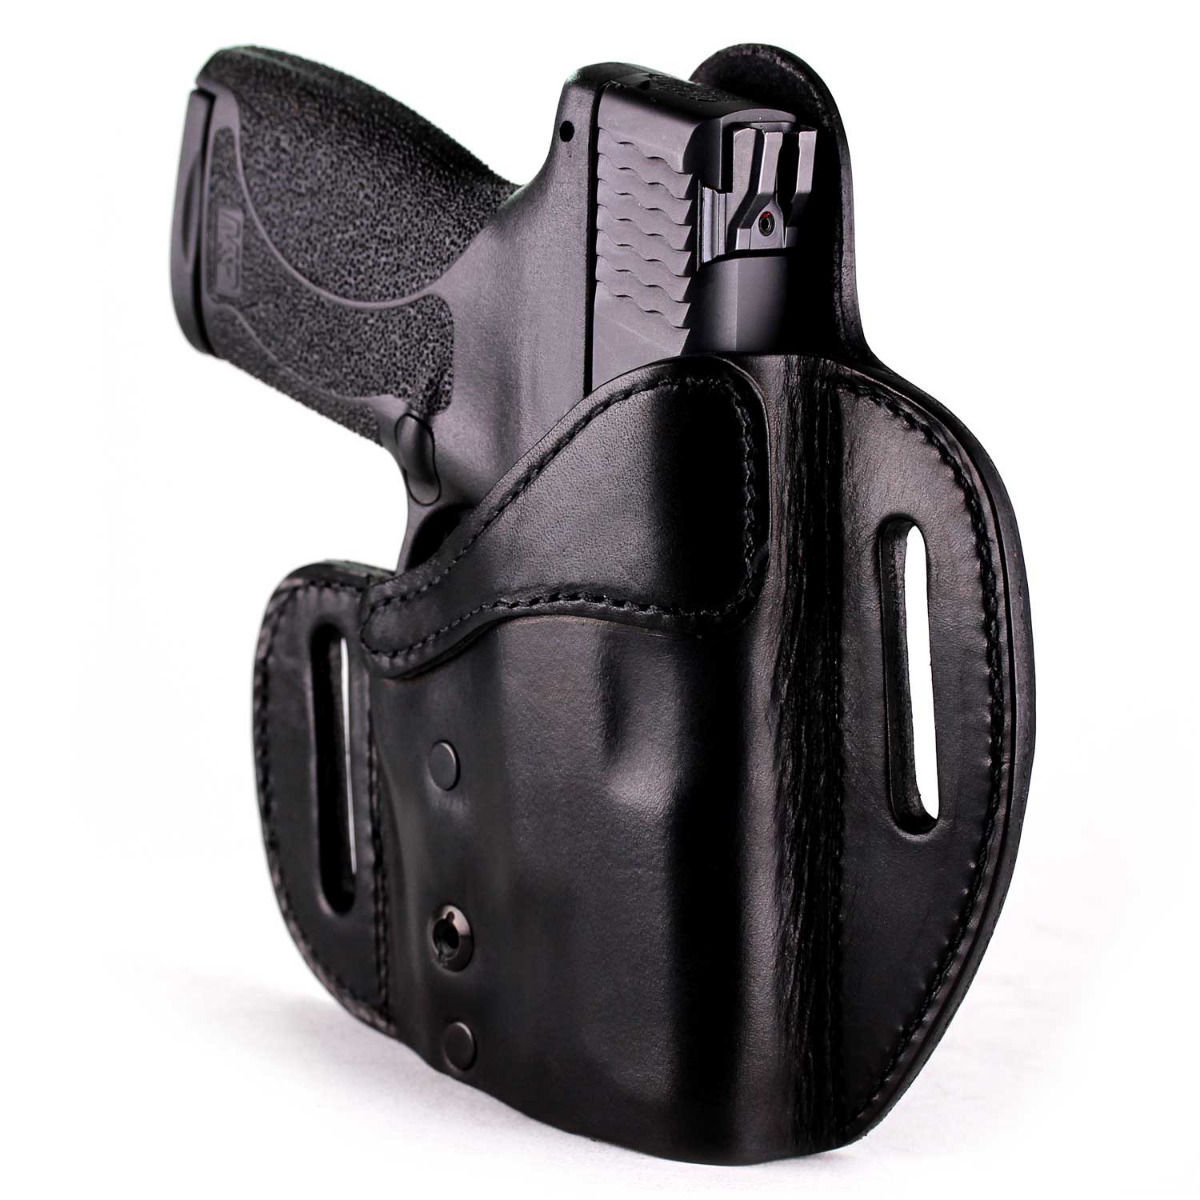 Details about   Universal Tactical Concealed Shoulder Genuine Leather Pistol Gun Holster Glock 